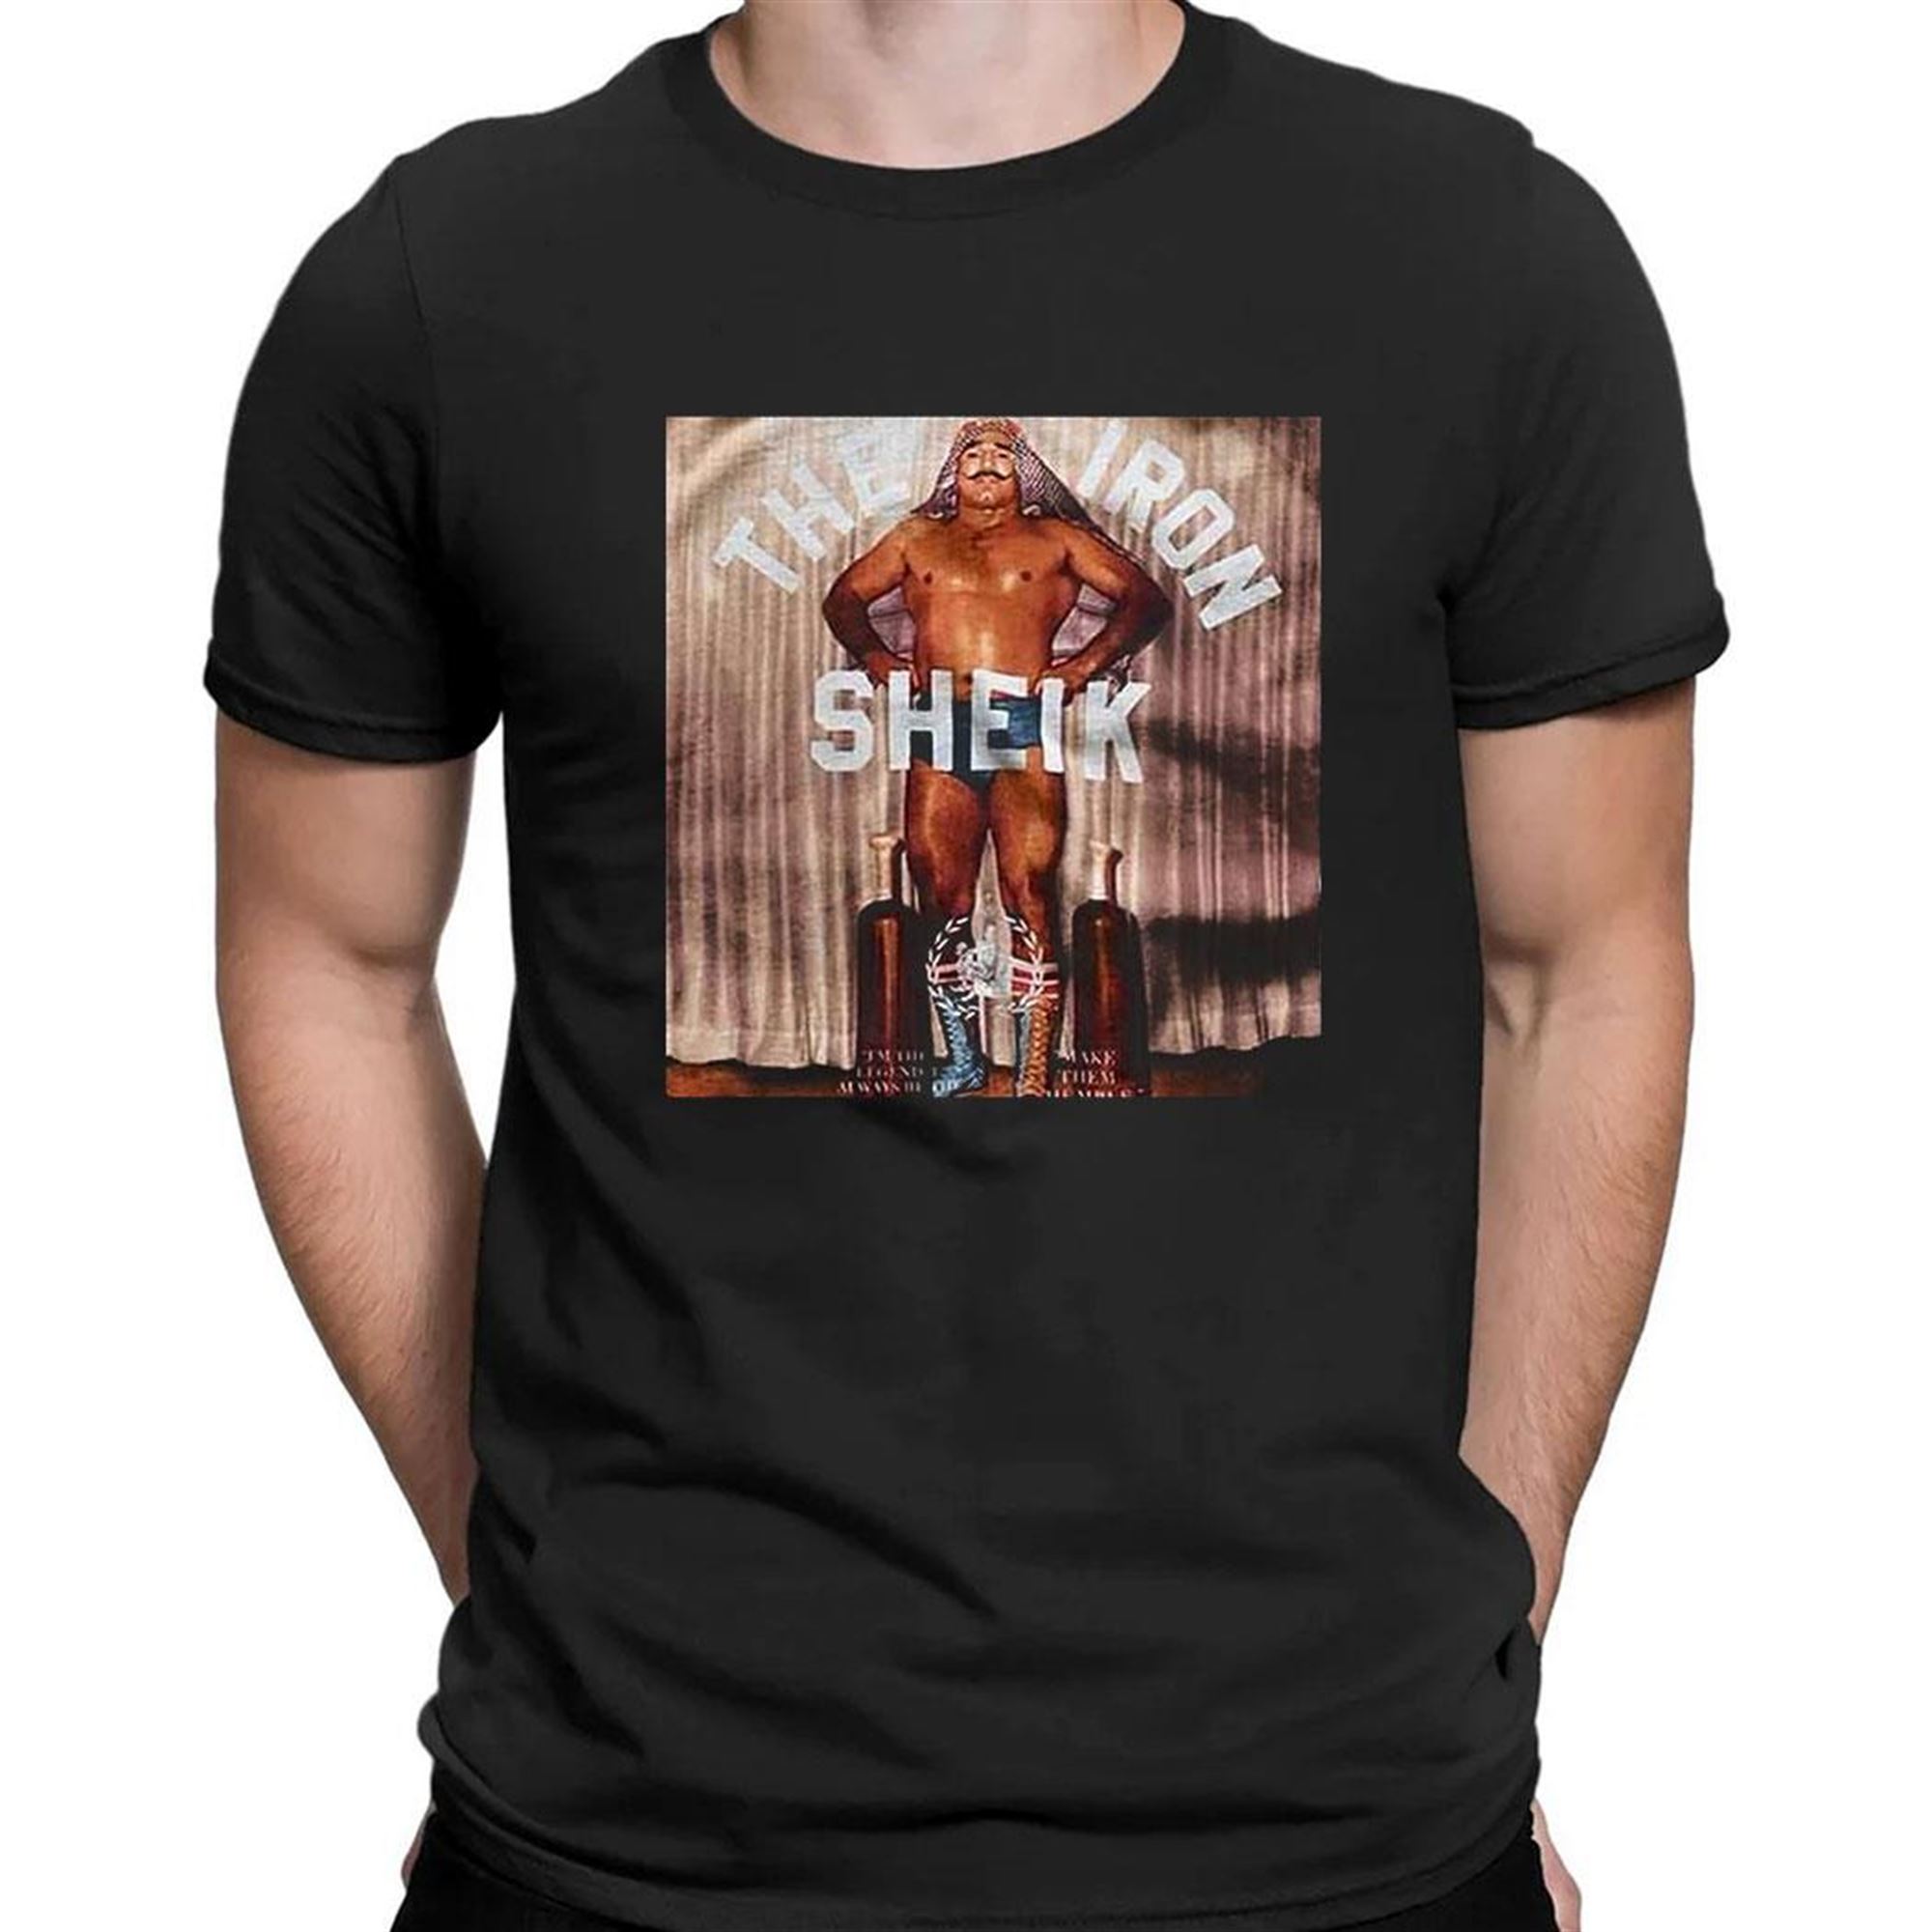 The Iron Sheik Shirt